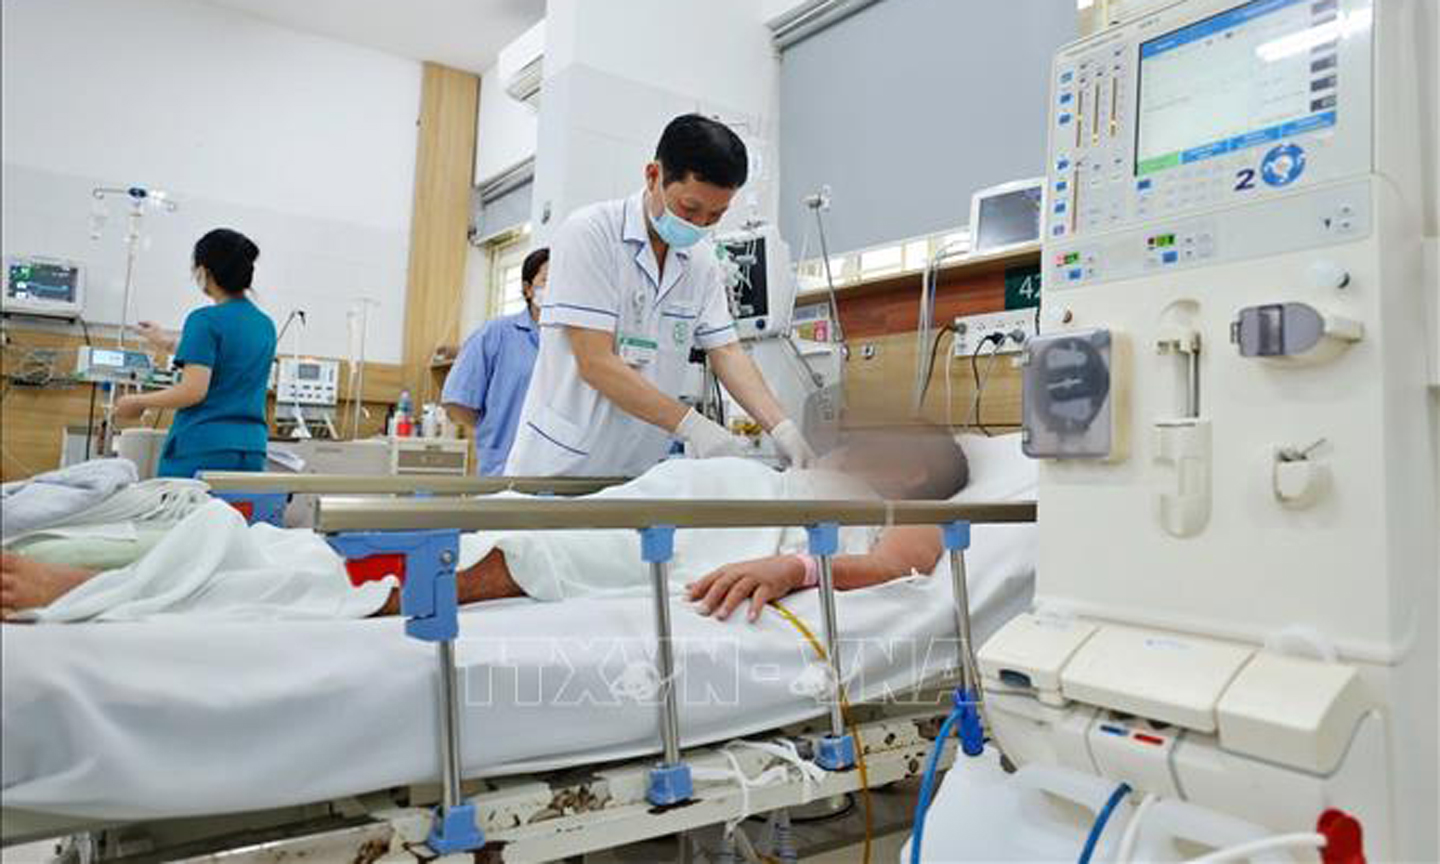 Bệnh nhân bị ngộ độc đang điều trị tại Trung tâm chống độc (Bệnh viện Bạch Mai). Ảnh (tư liệu): Minh Quyết/TTXVN